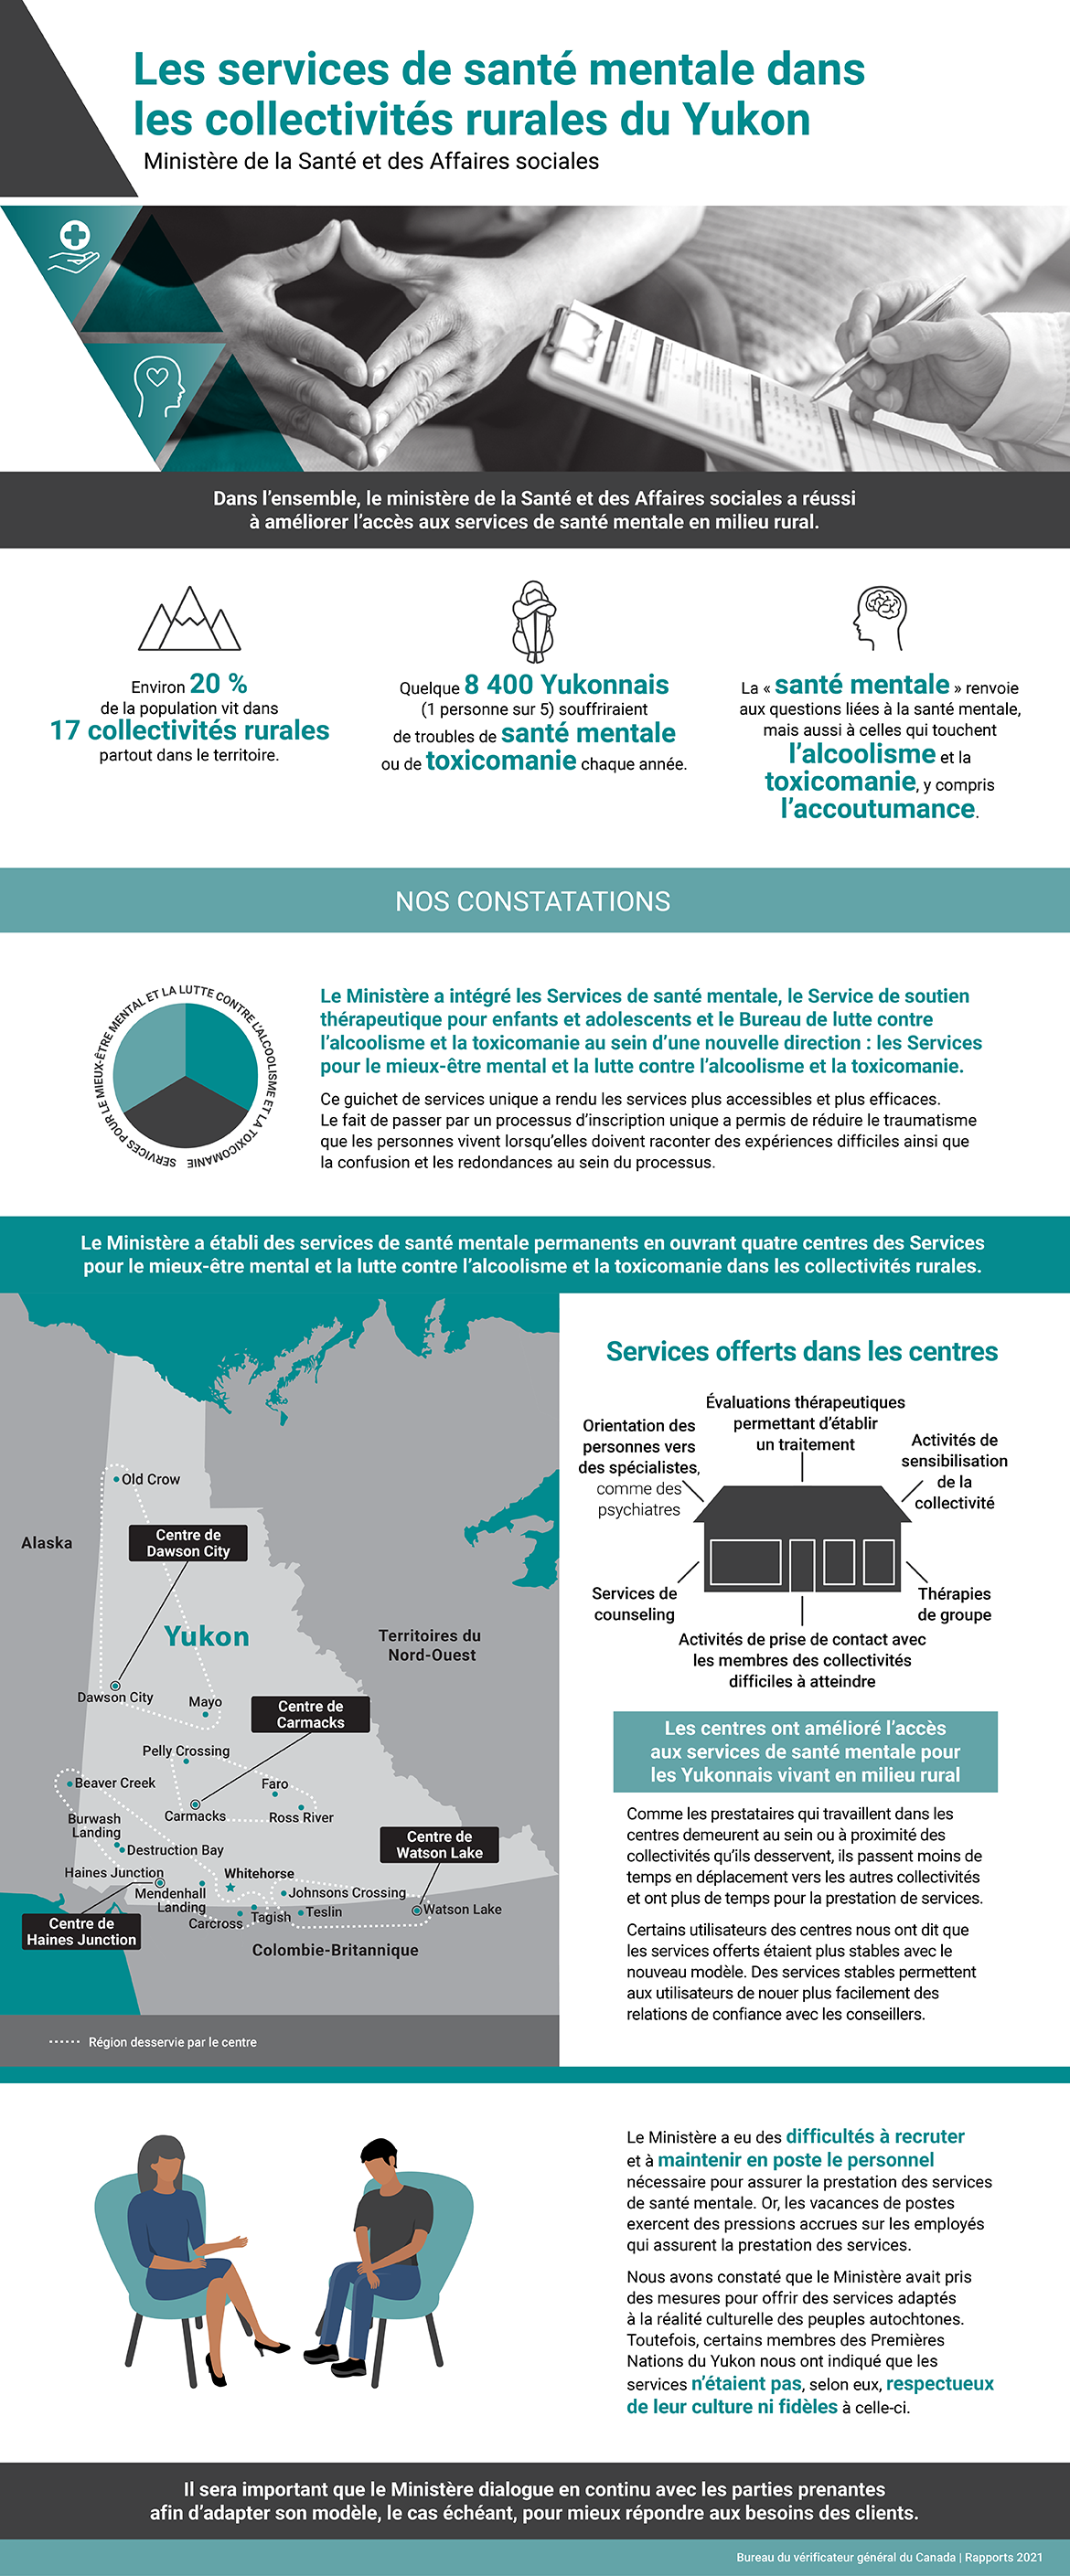 Le résumé graphique présente les constatations tirées de l’audit des services de santé mentale dans les collectivités rurales du Yukon